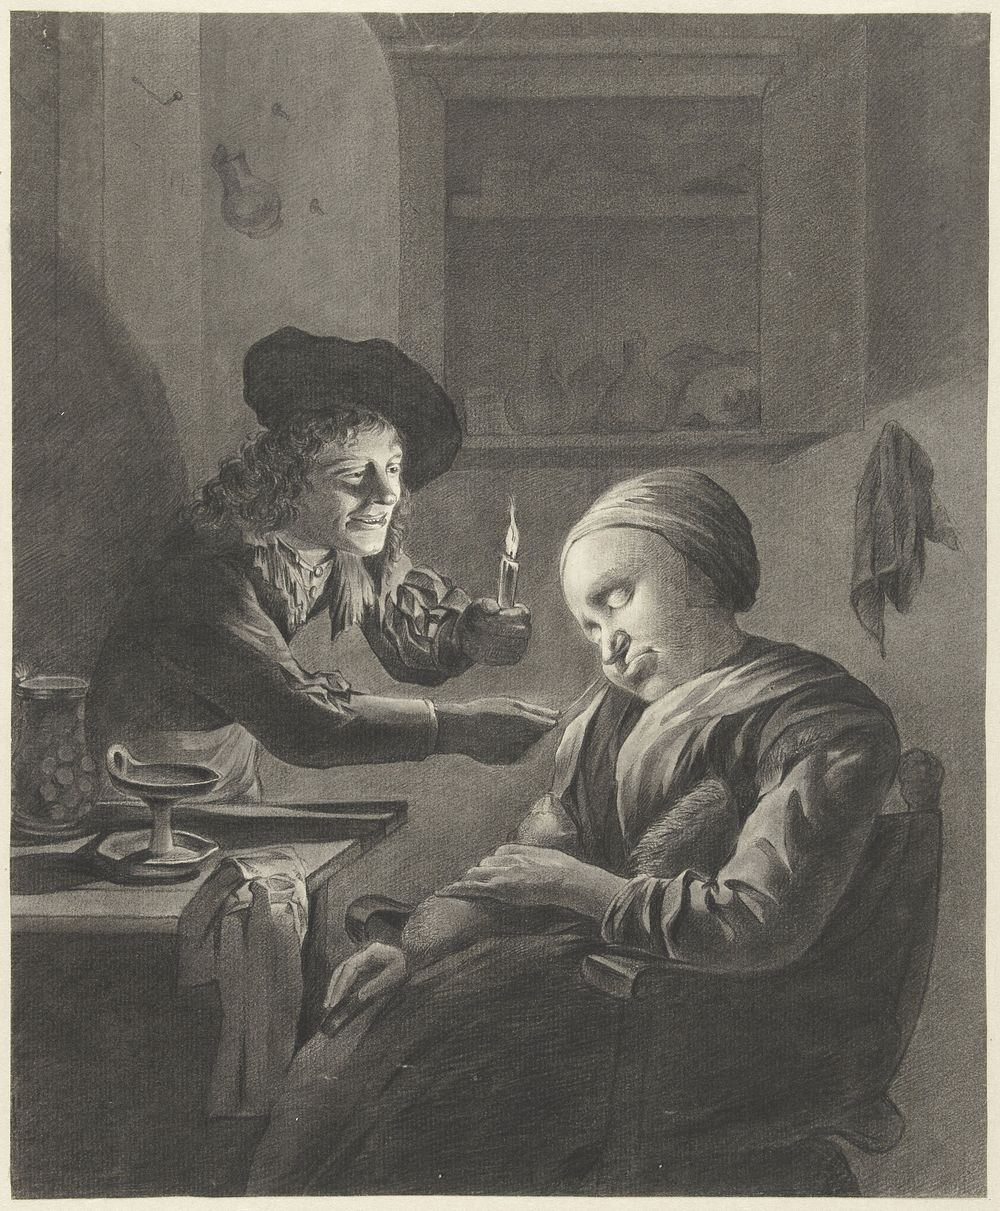 Man met kaars kietelt een slapende vrouw (1747 - 1767) by J Dillhoff